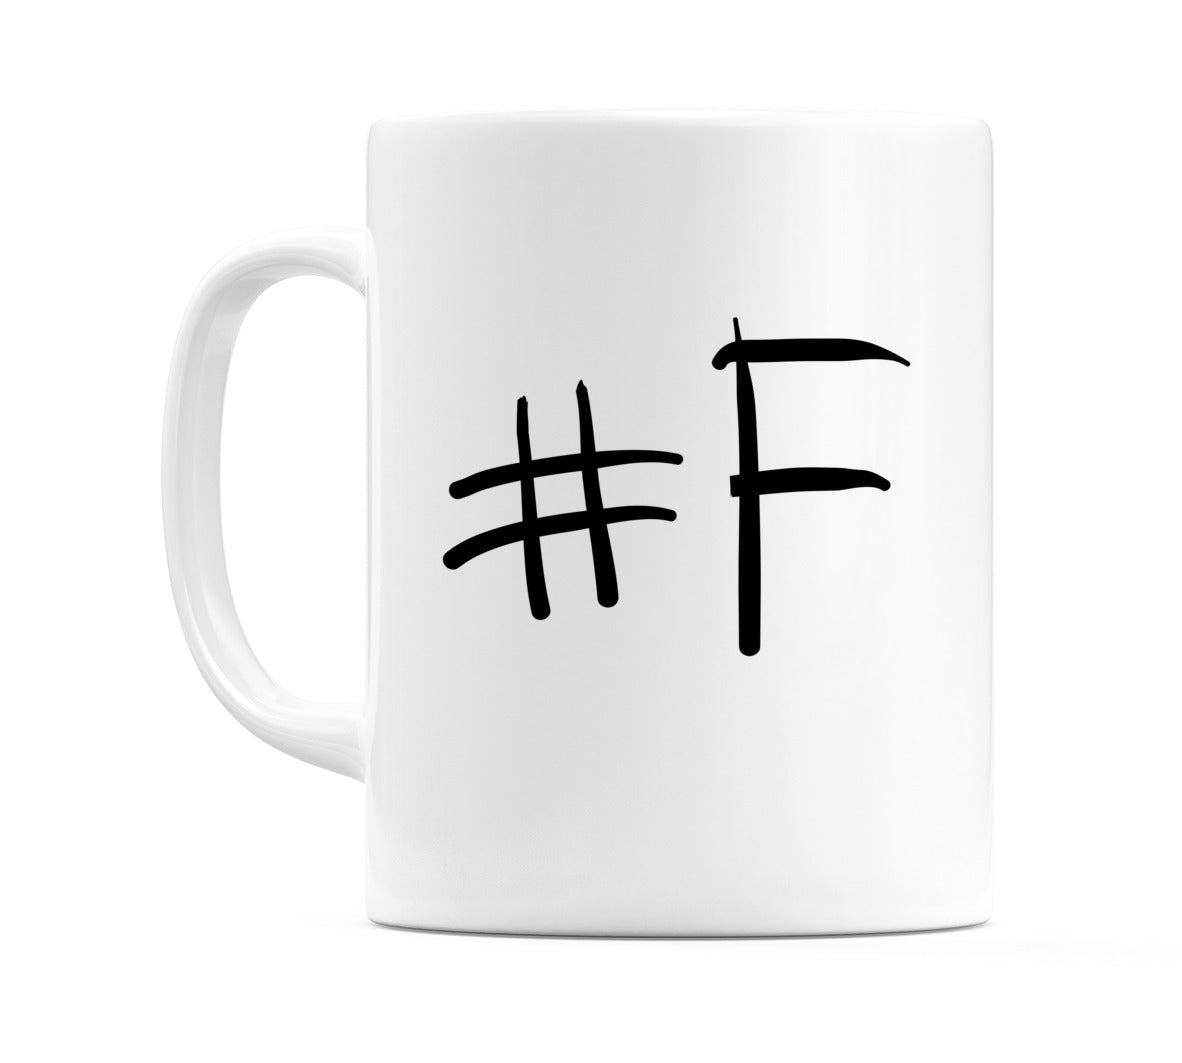 #F Mug